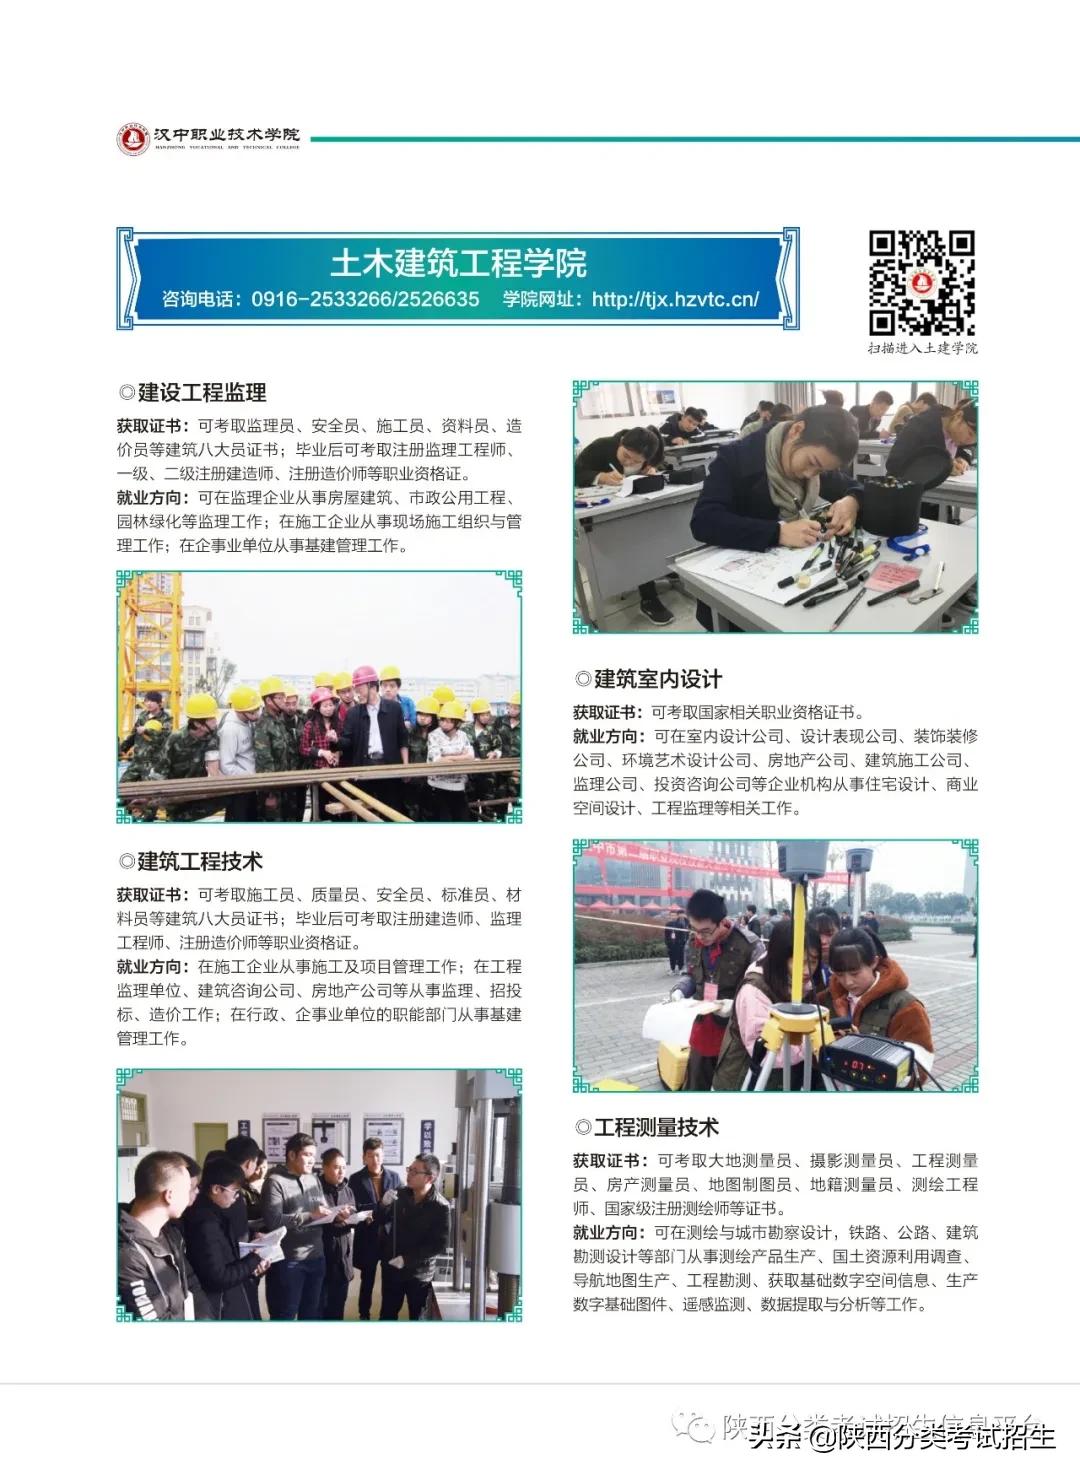 汉中职业技术学院2021年单独考试招生报考指南